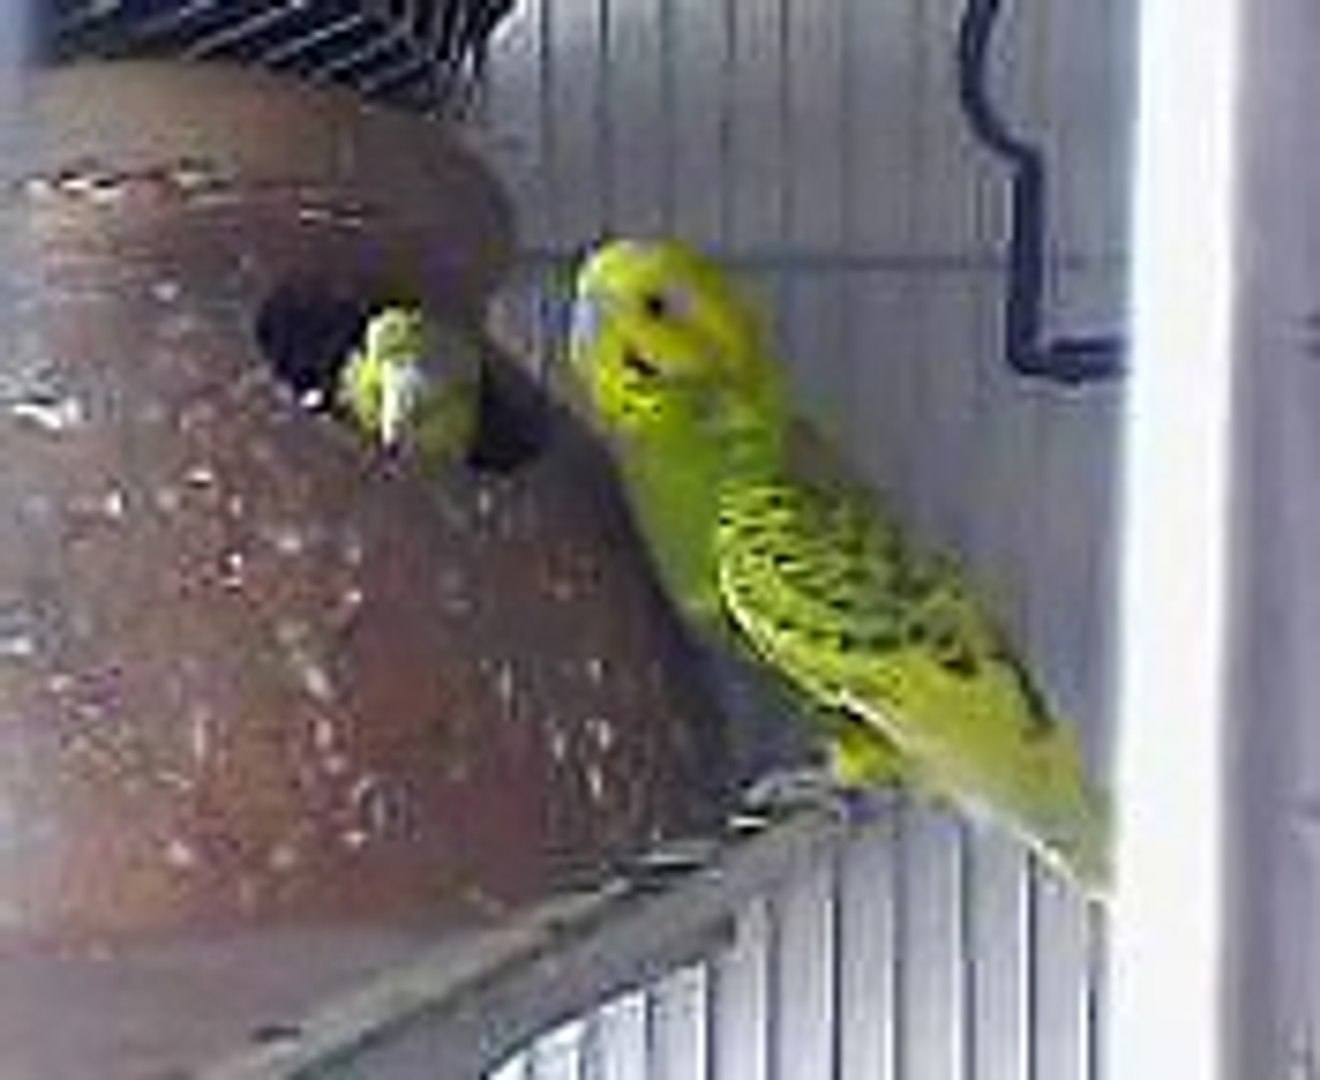 Strøm Celebrity pinion australian parrot video manuskript Afdeling Faktisk